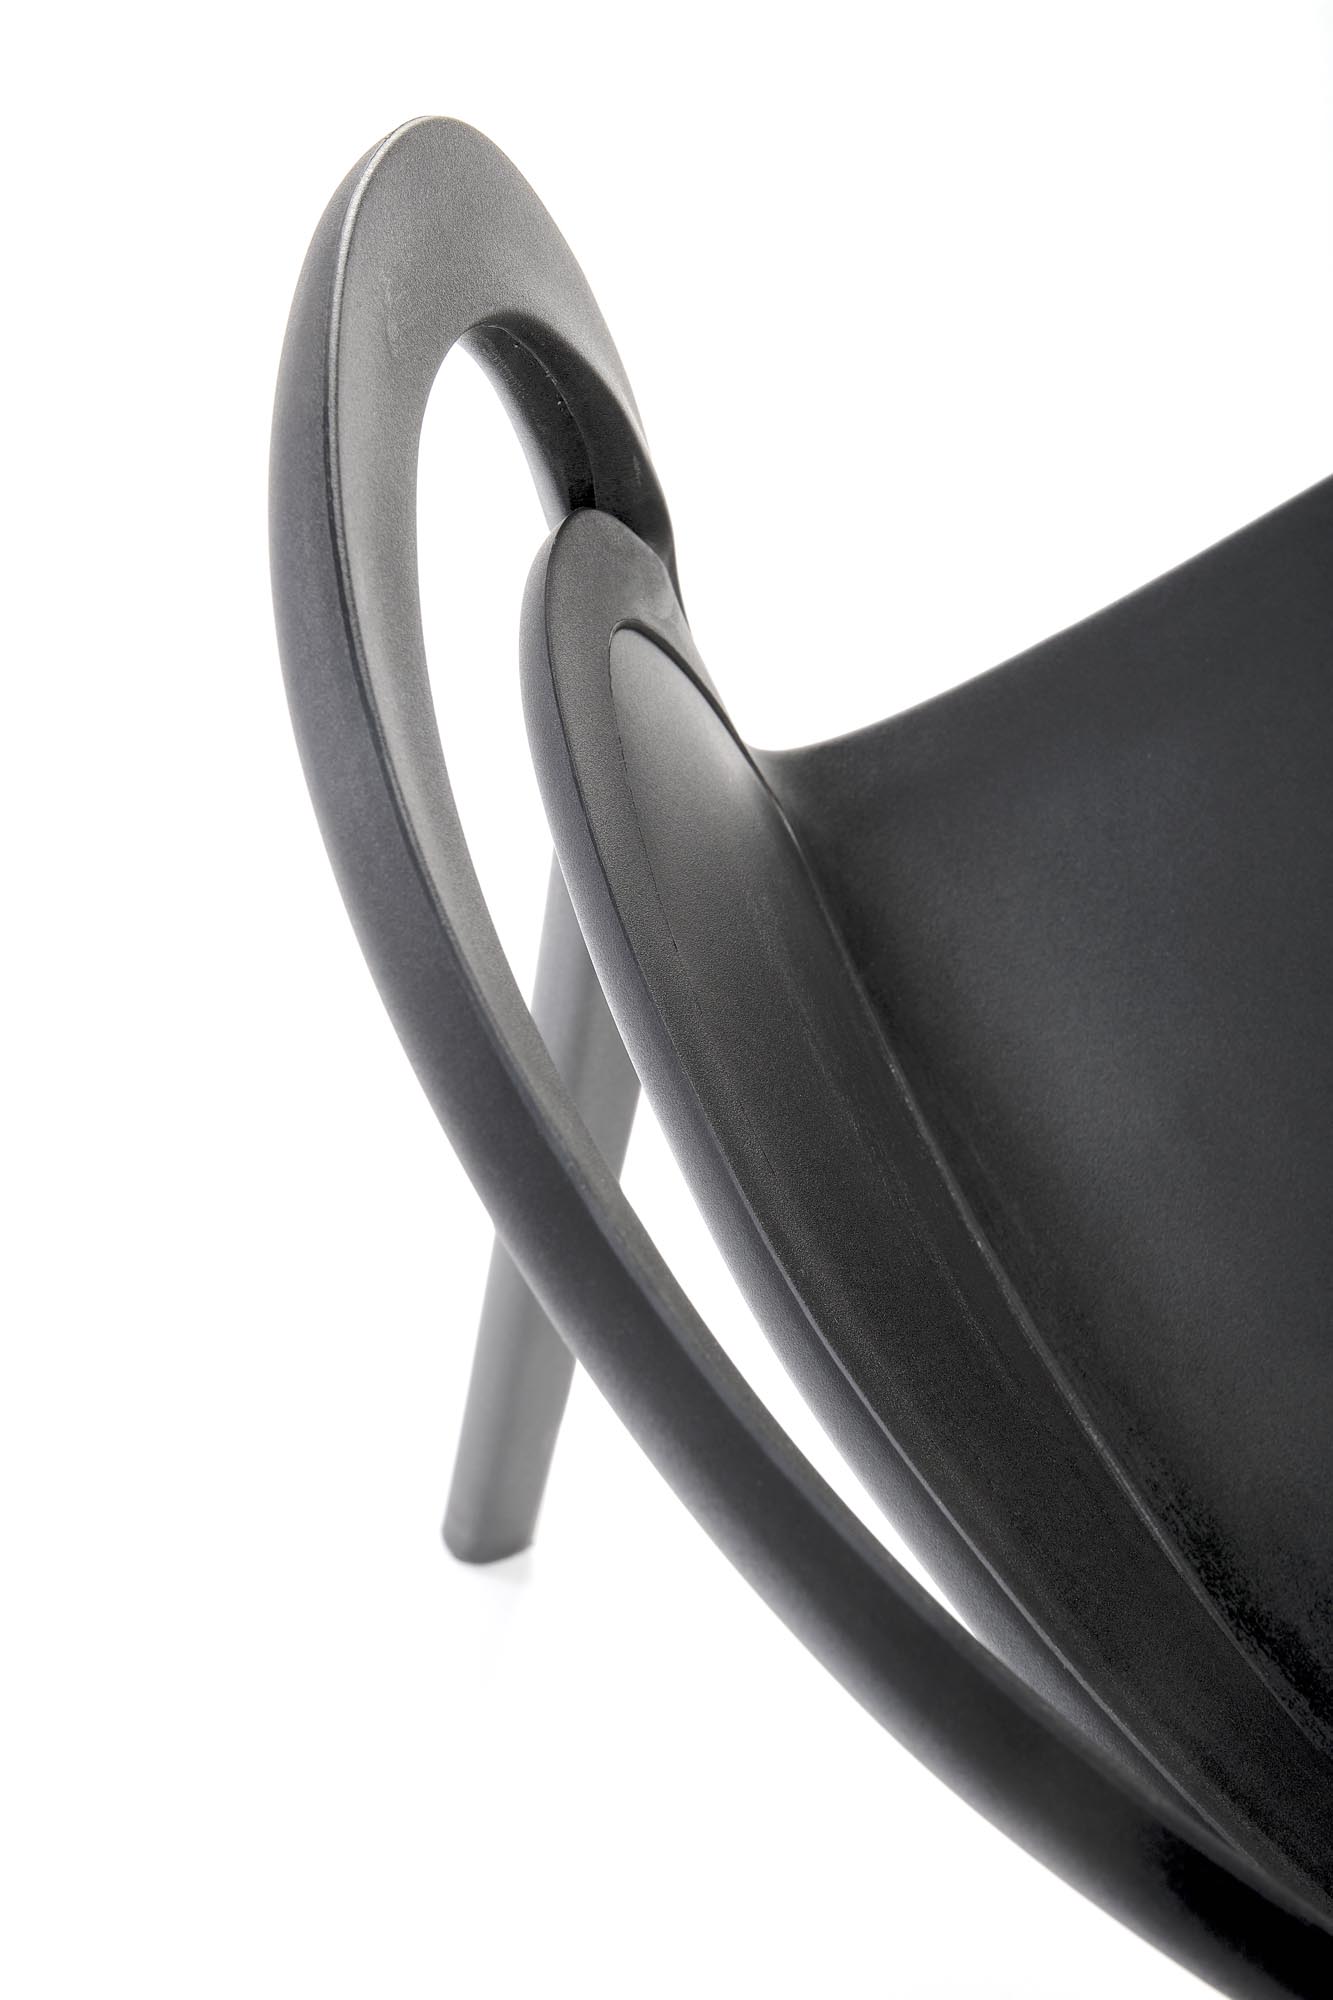 K490 Stolička plastik Čierny(1p=4szt) Stolička z tworzywa sztucznego k490 - Čierny